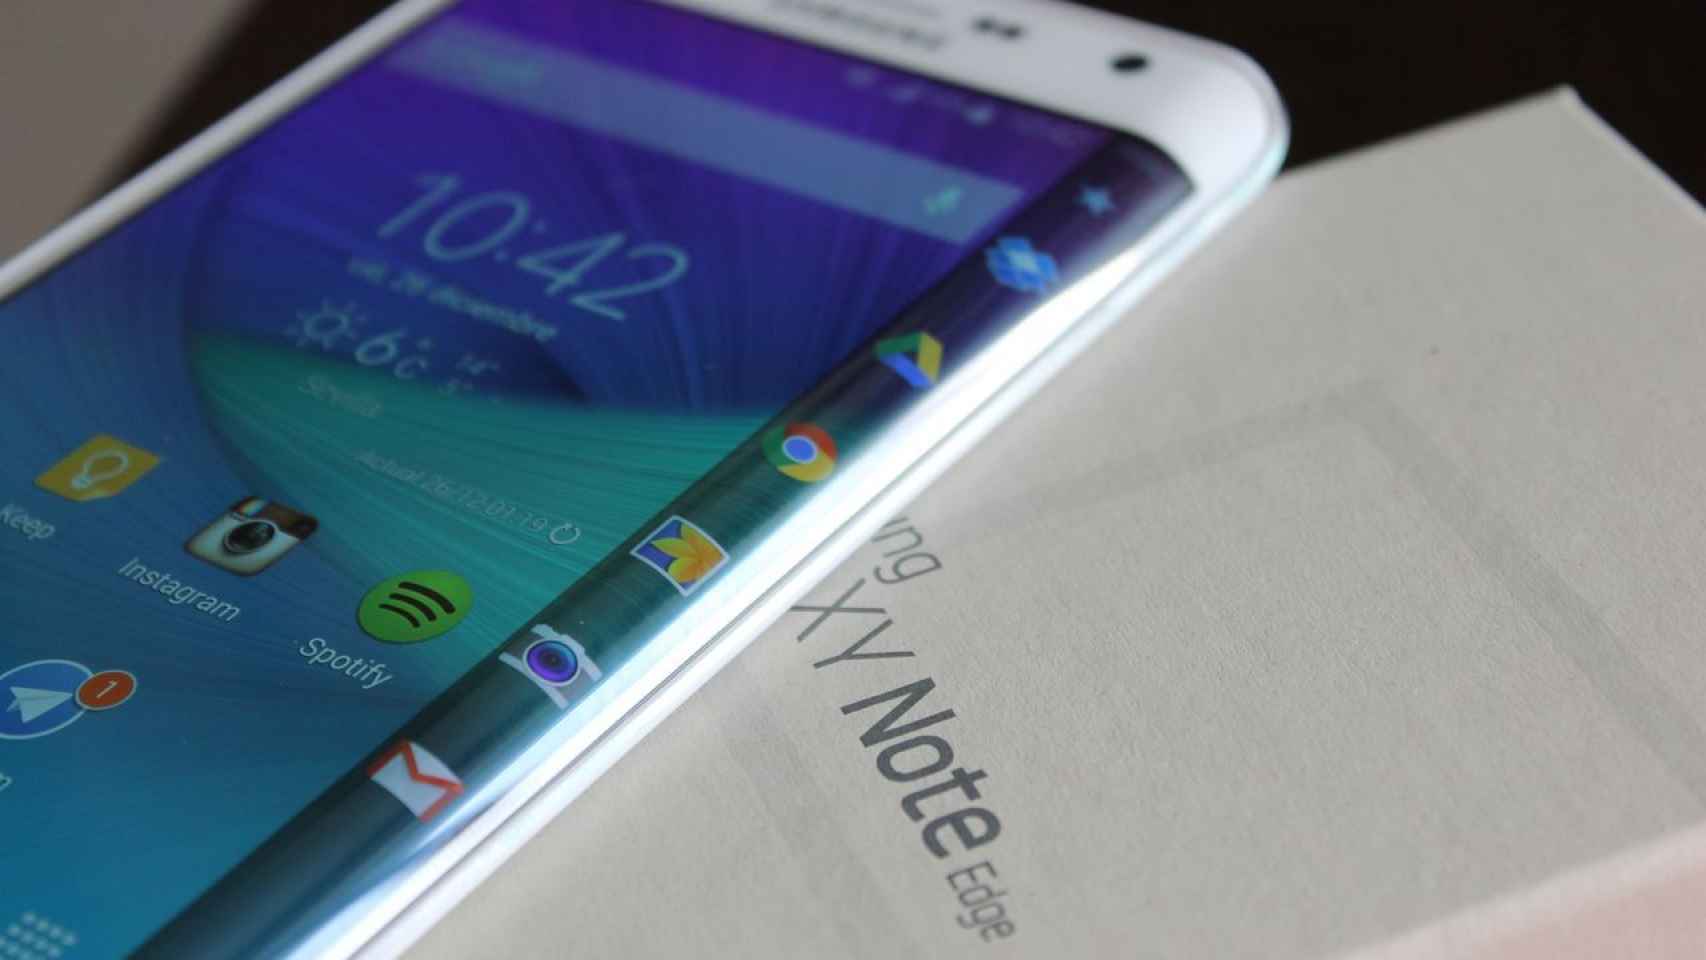 Samsung Galaxy Note Edge: Análisis y experiencia de uso